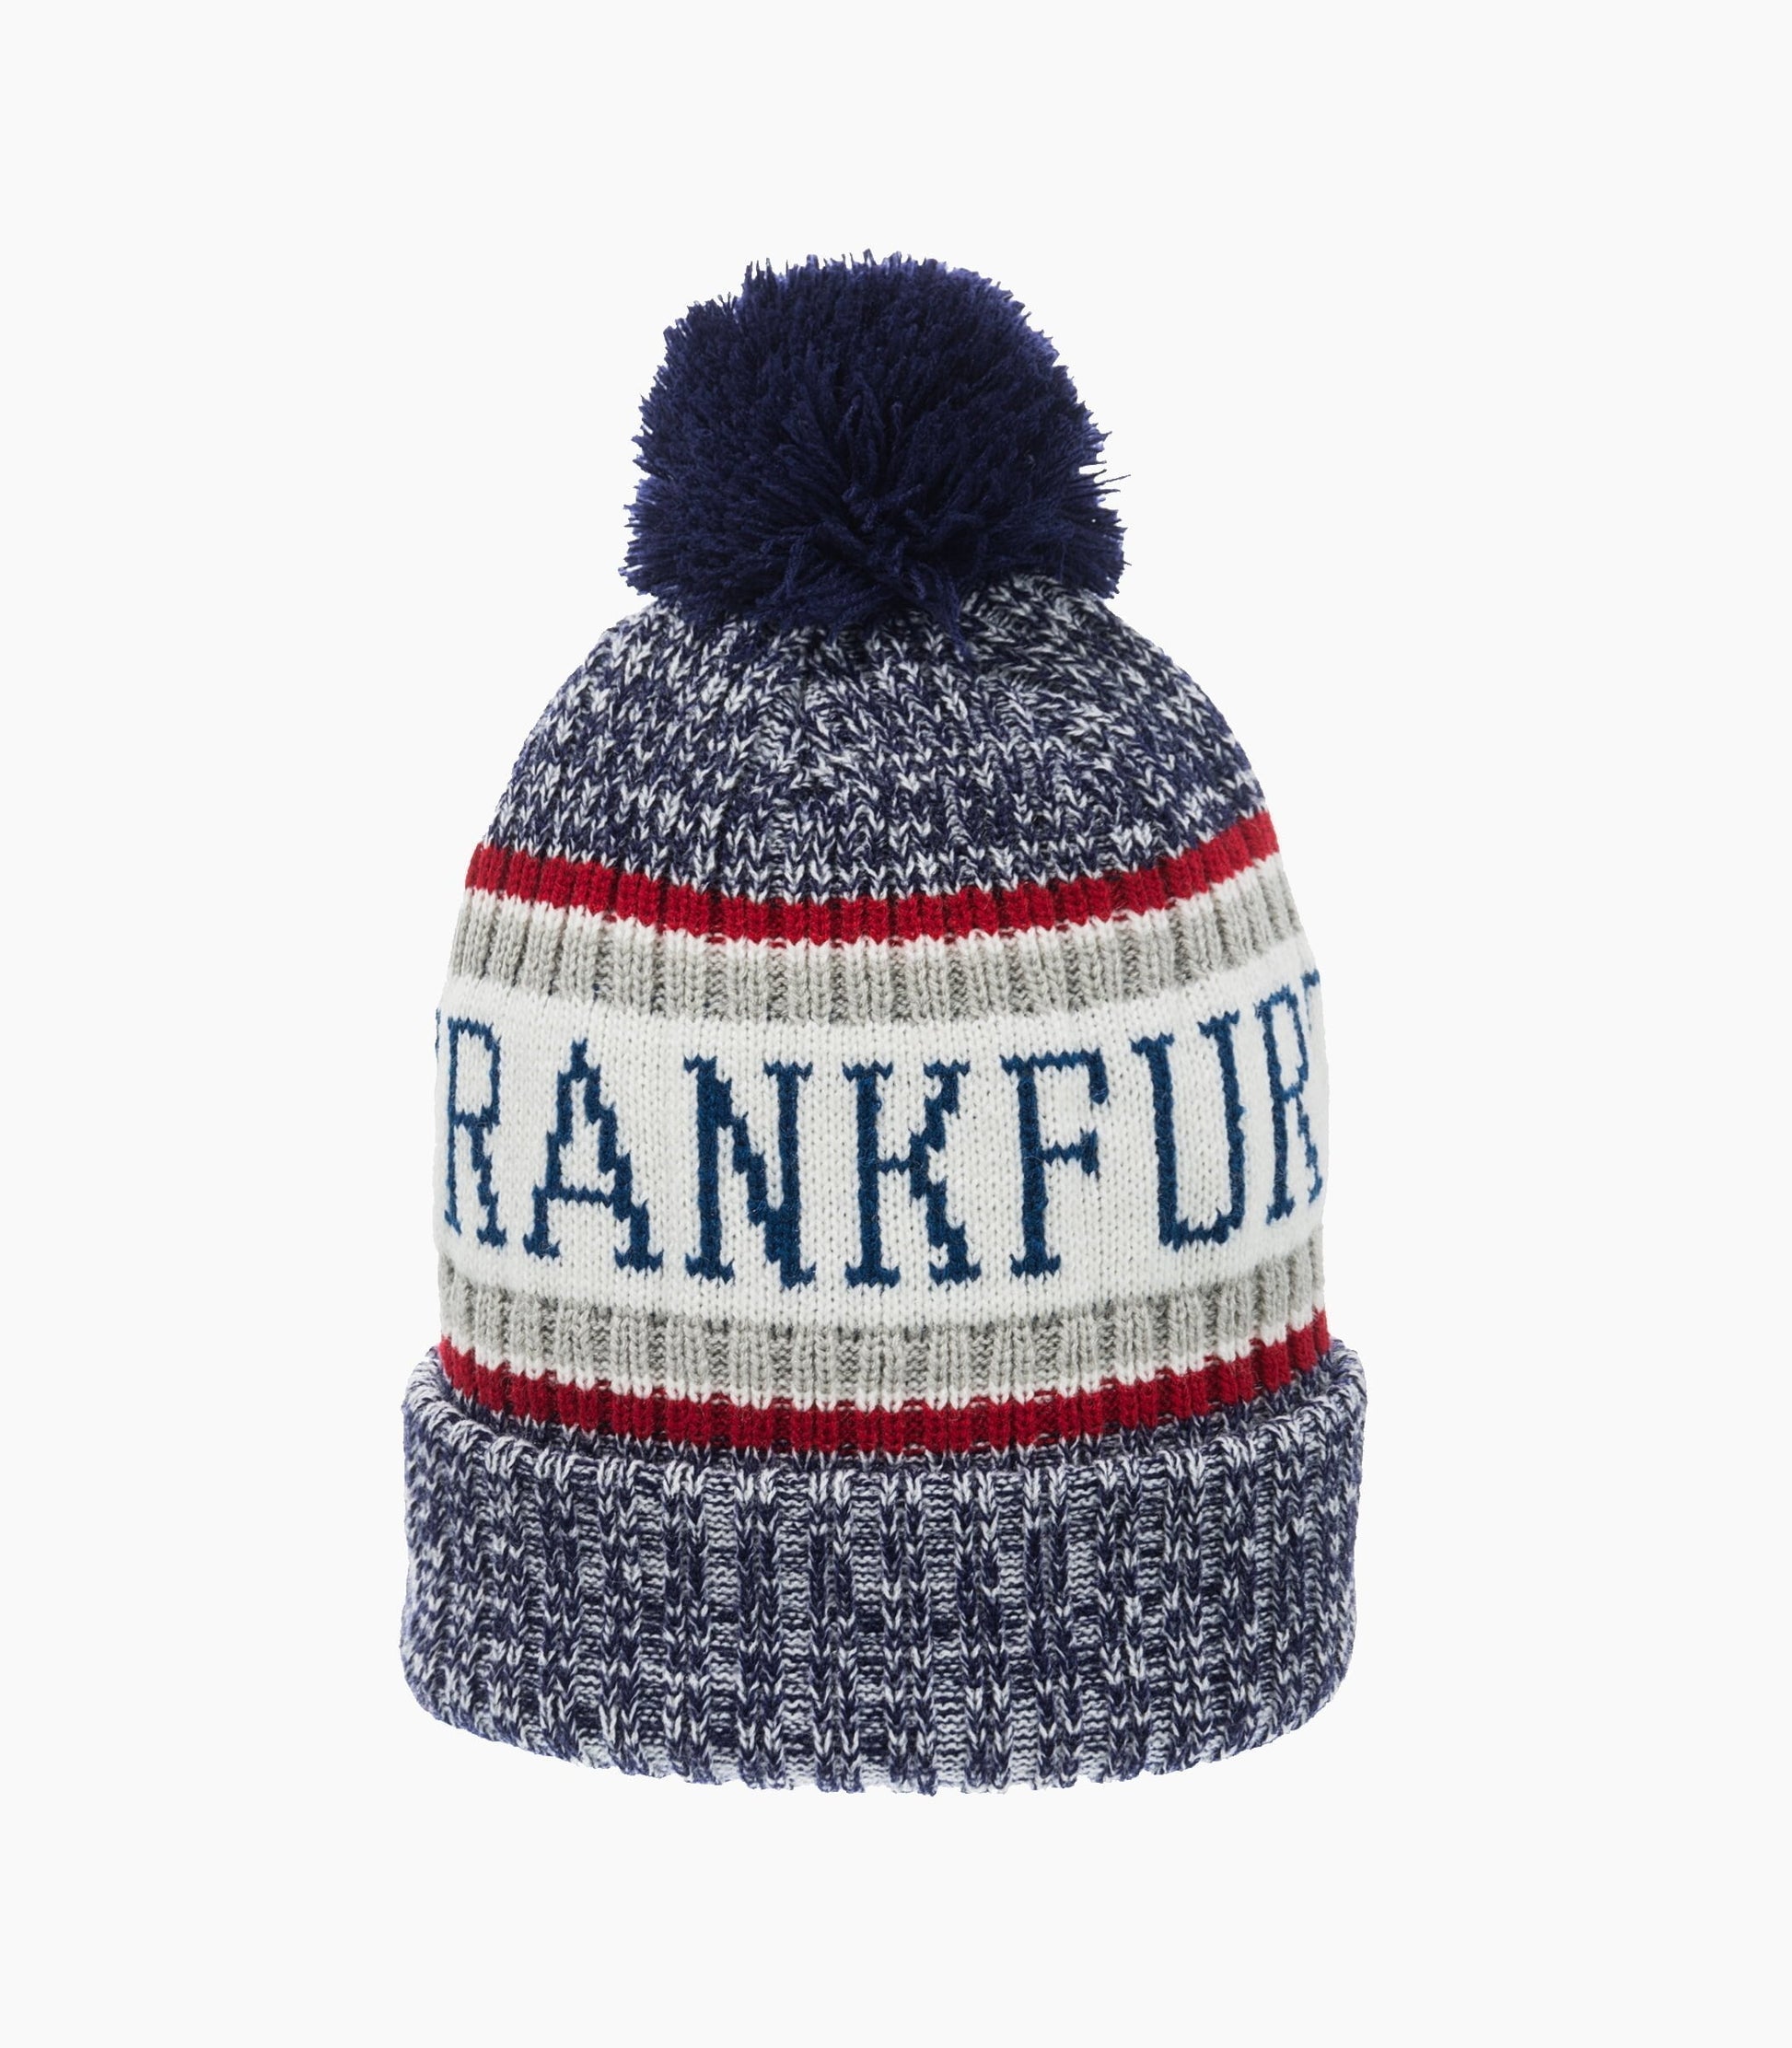 Frankfurt Winter hat - Robin Ruth